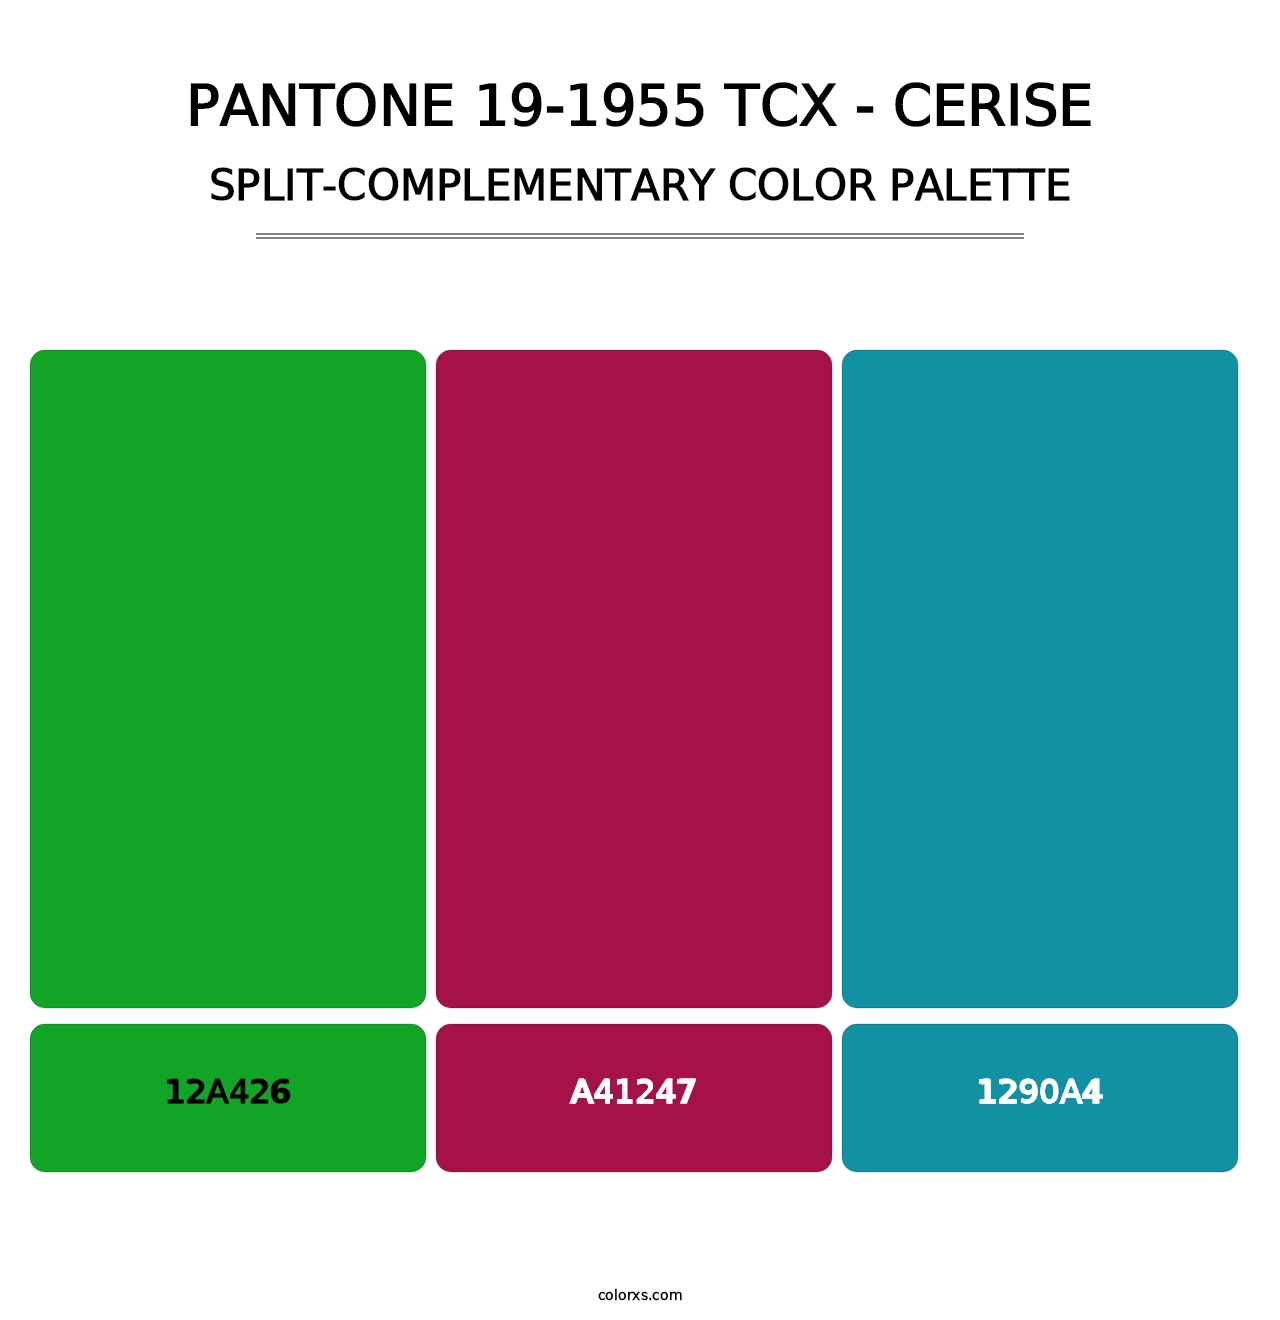 PANTONE 19-1955 TCX - Cerise - Split-Complementary Color Palette